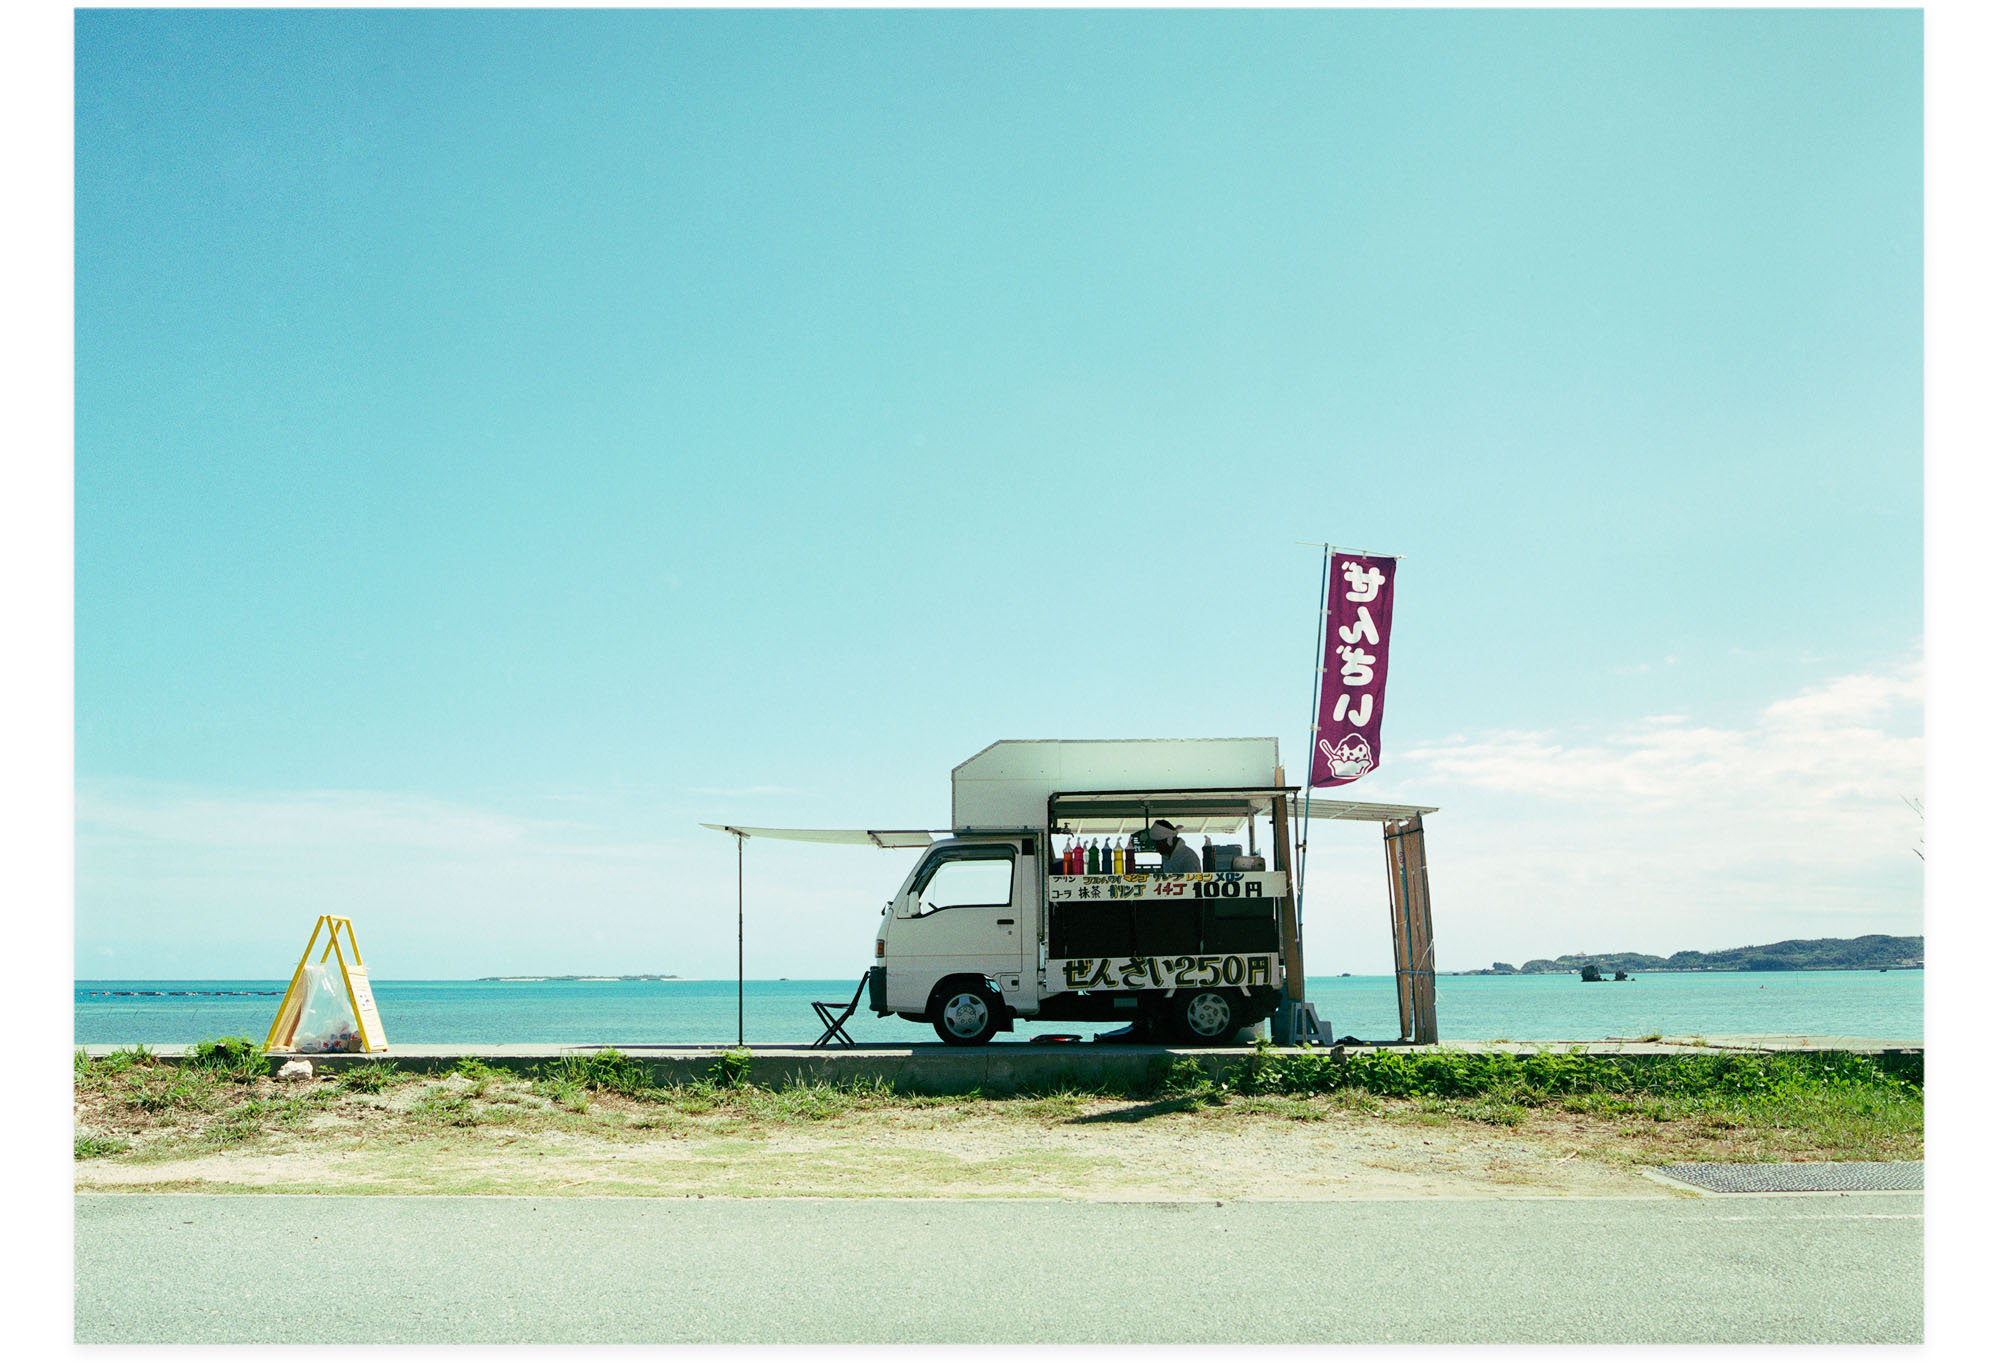 201301007_絵と広告とかき氷と沖縄のぜんざい2